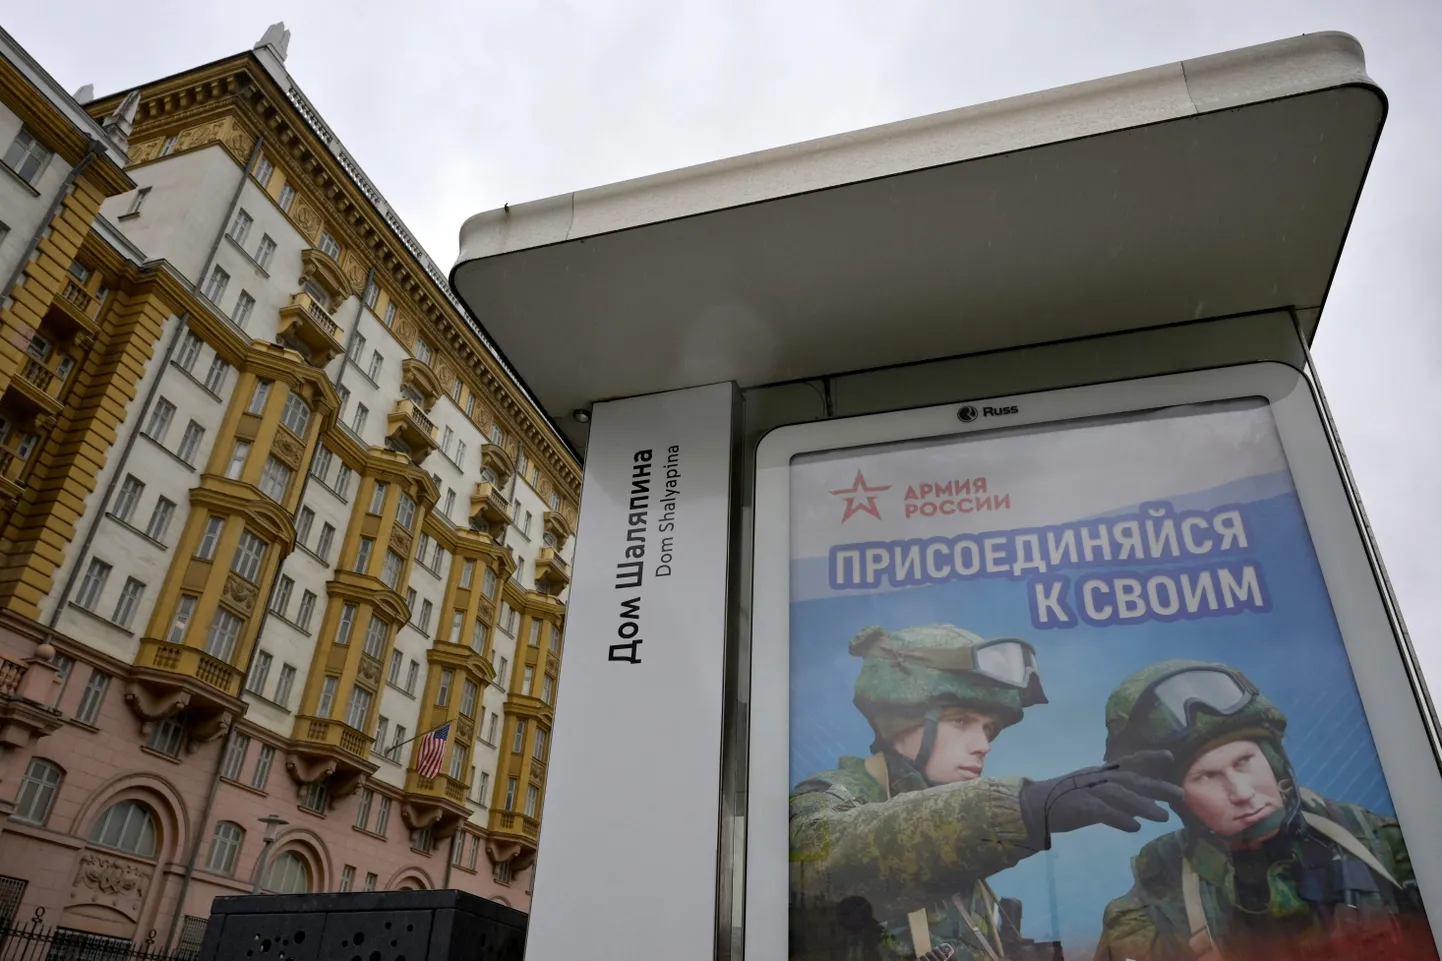 Vene sõjaväe värbamisreklaam bussiootepaviljonil USA Moskva saatkonna juures.